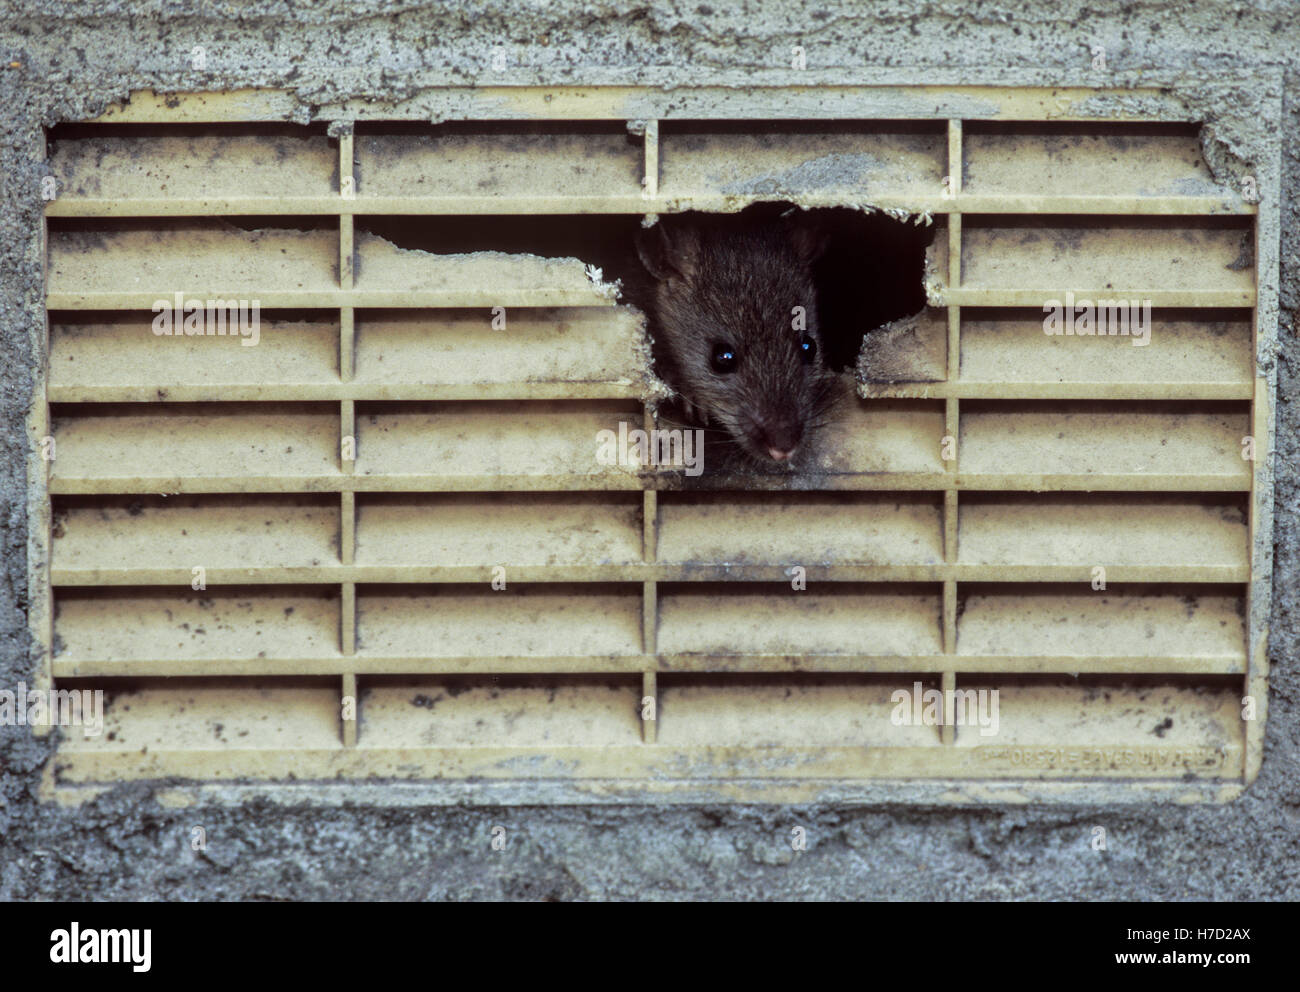 Braune Ratte,(Rattus norvegicus), Kollegen von innen eine Entlüftungsöffnung gekaut Luft auf ein Haus, London, Vereinigtes Königreich. Stockfoto